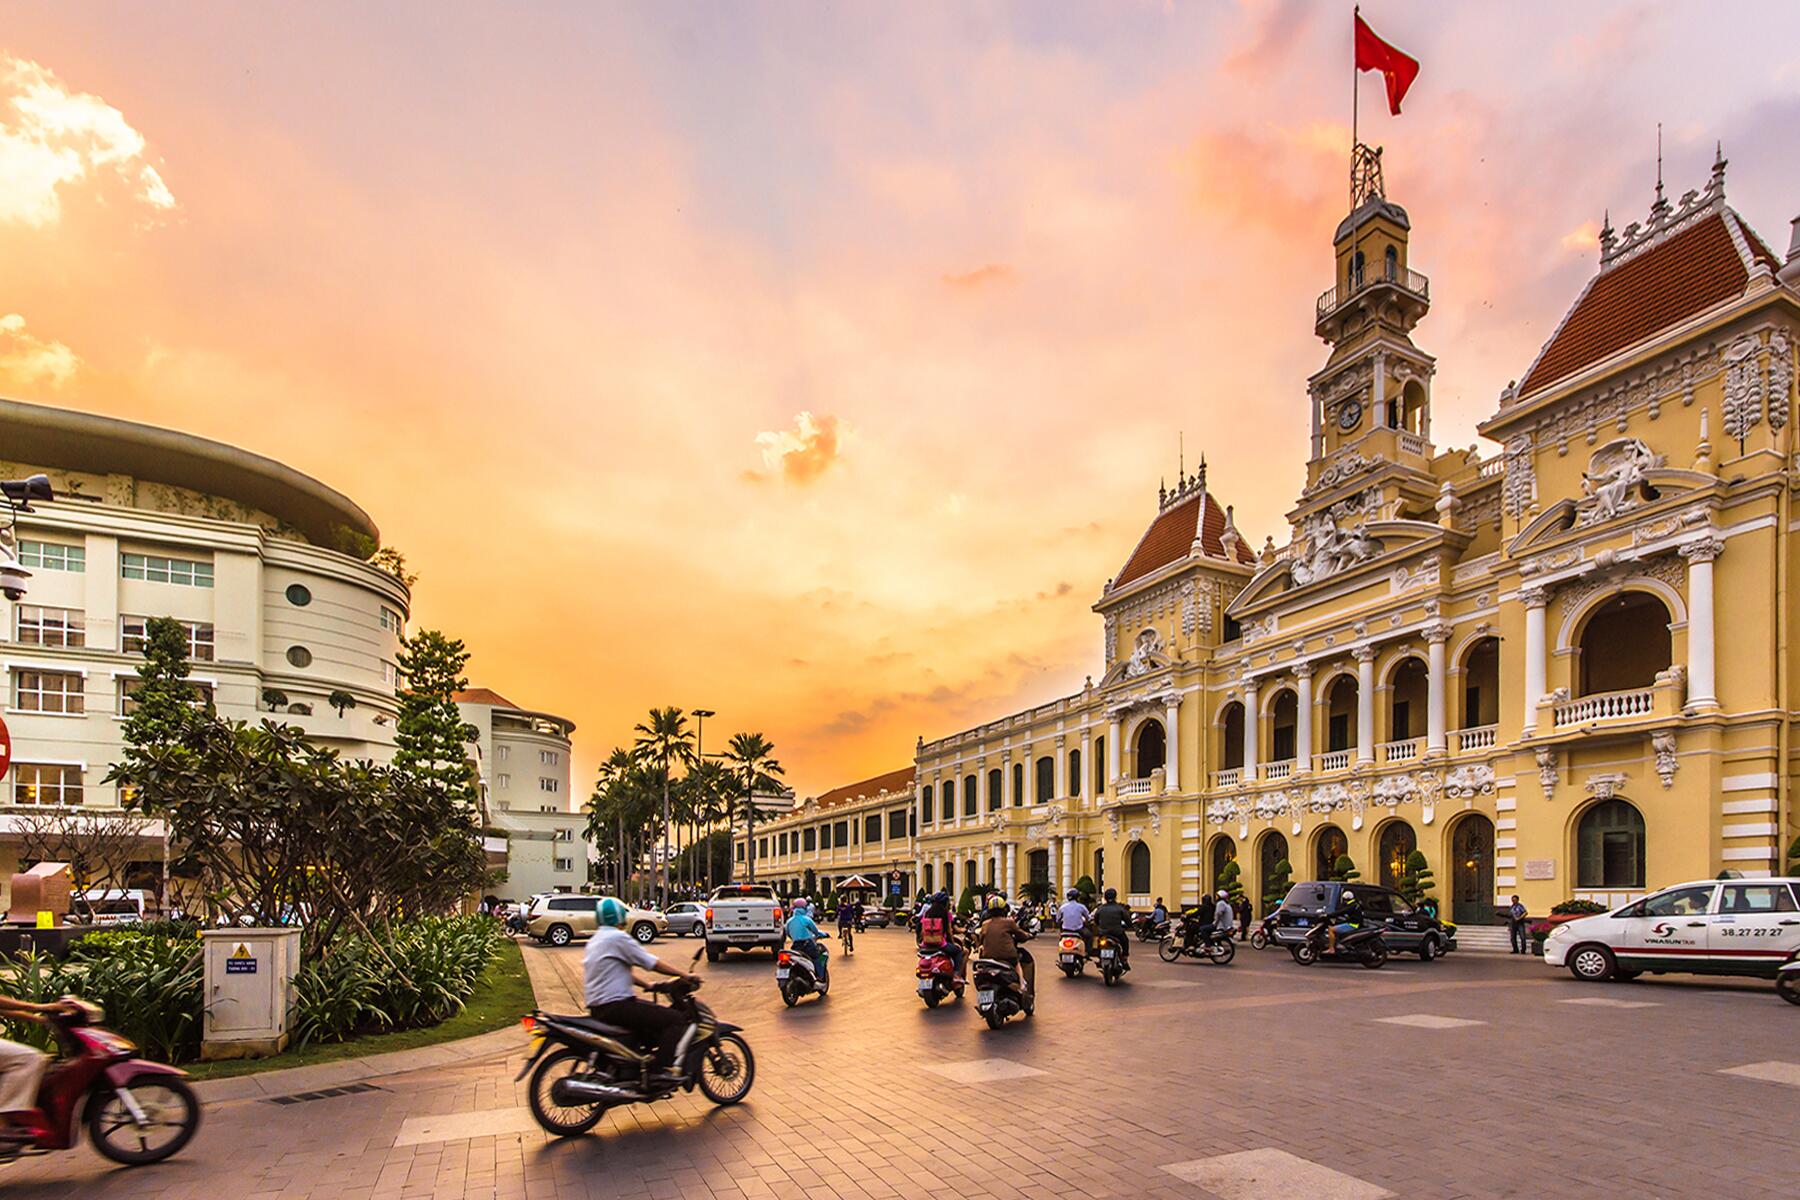 <a href='https://www.fodors.com/go-list/2023/asia#ho-chi-minh-city'>Fodor’s Go List 2023: Ho Chi Minh City, Vietnam</a>